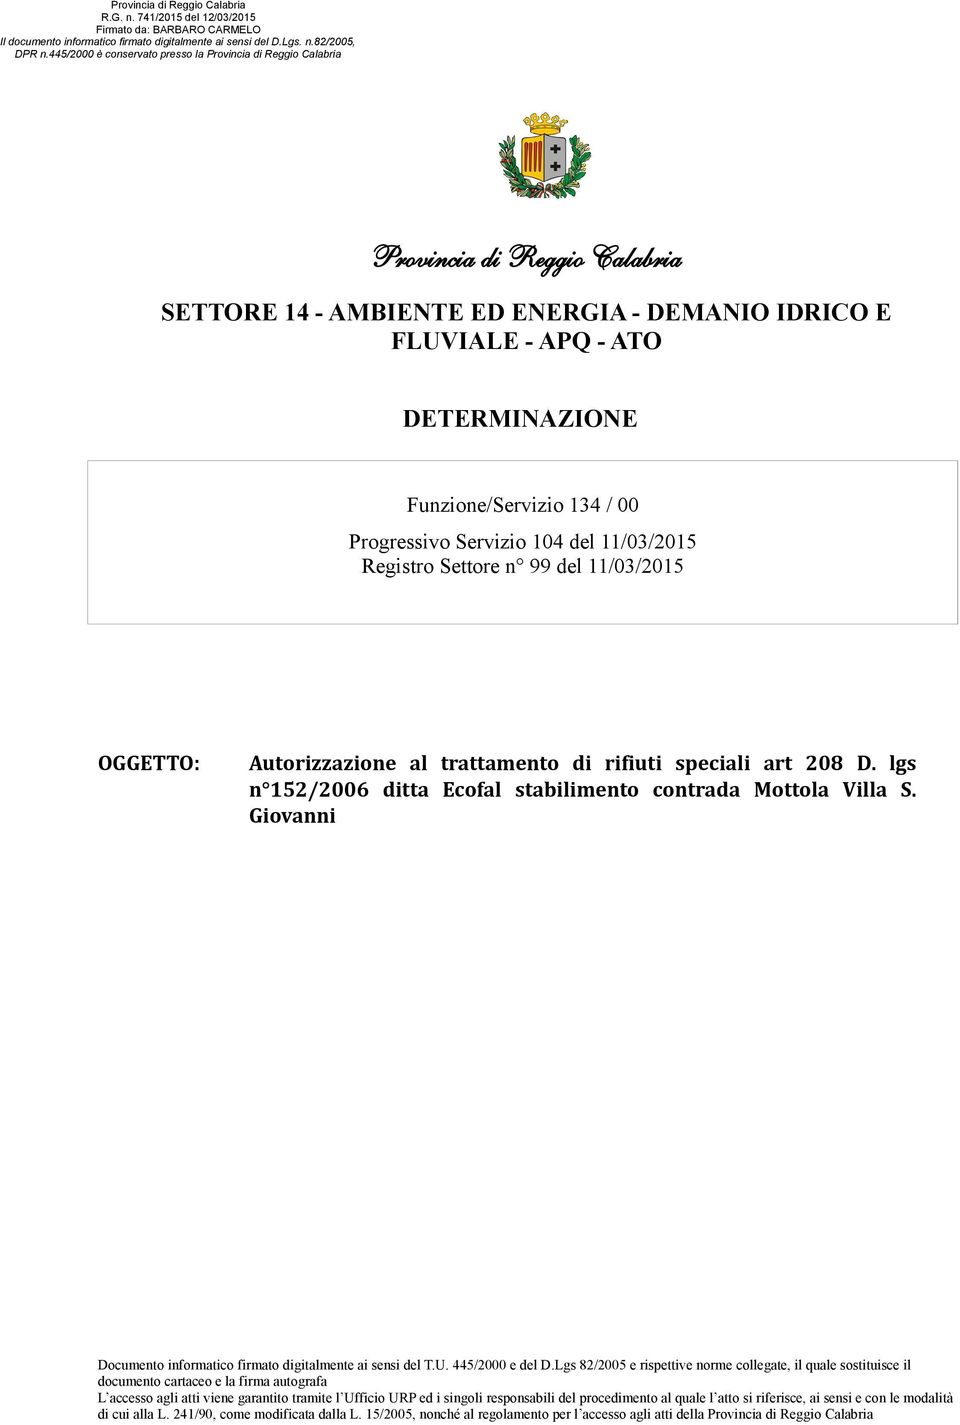 Giovanni Documento informatico firmato digitalmente ai sensi del T.U. 445/2000 e del D.